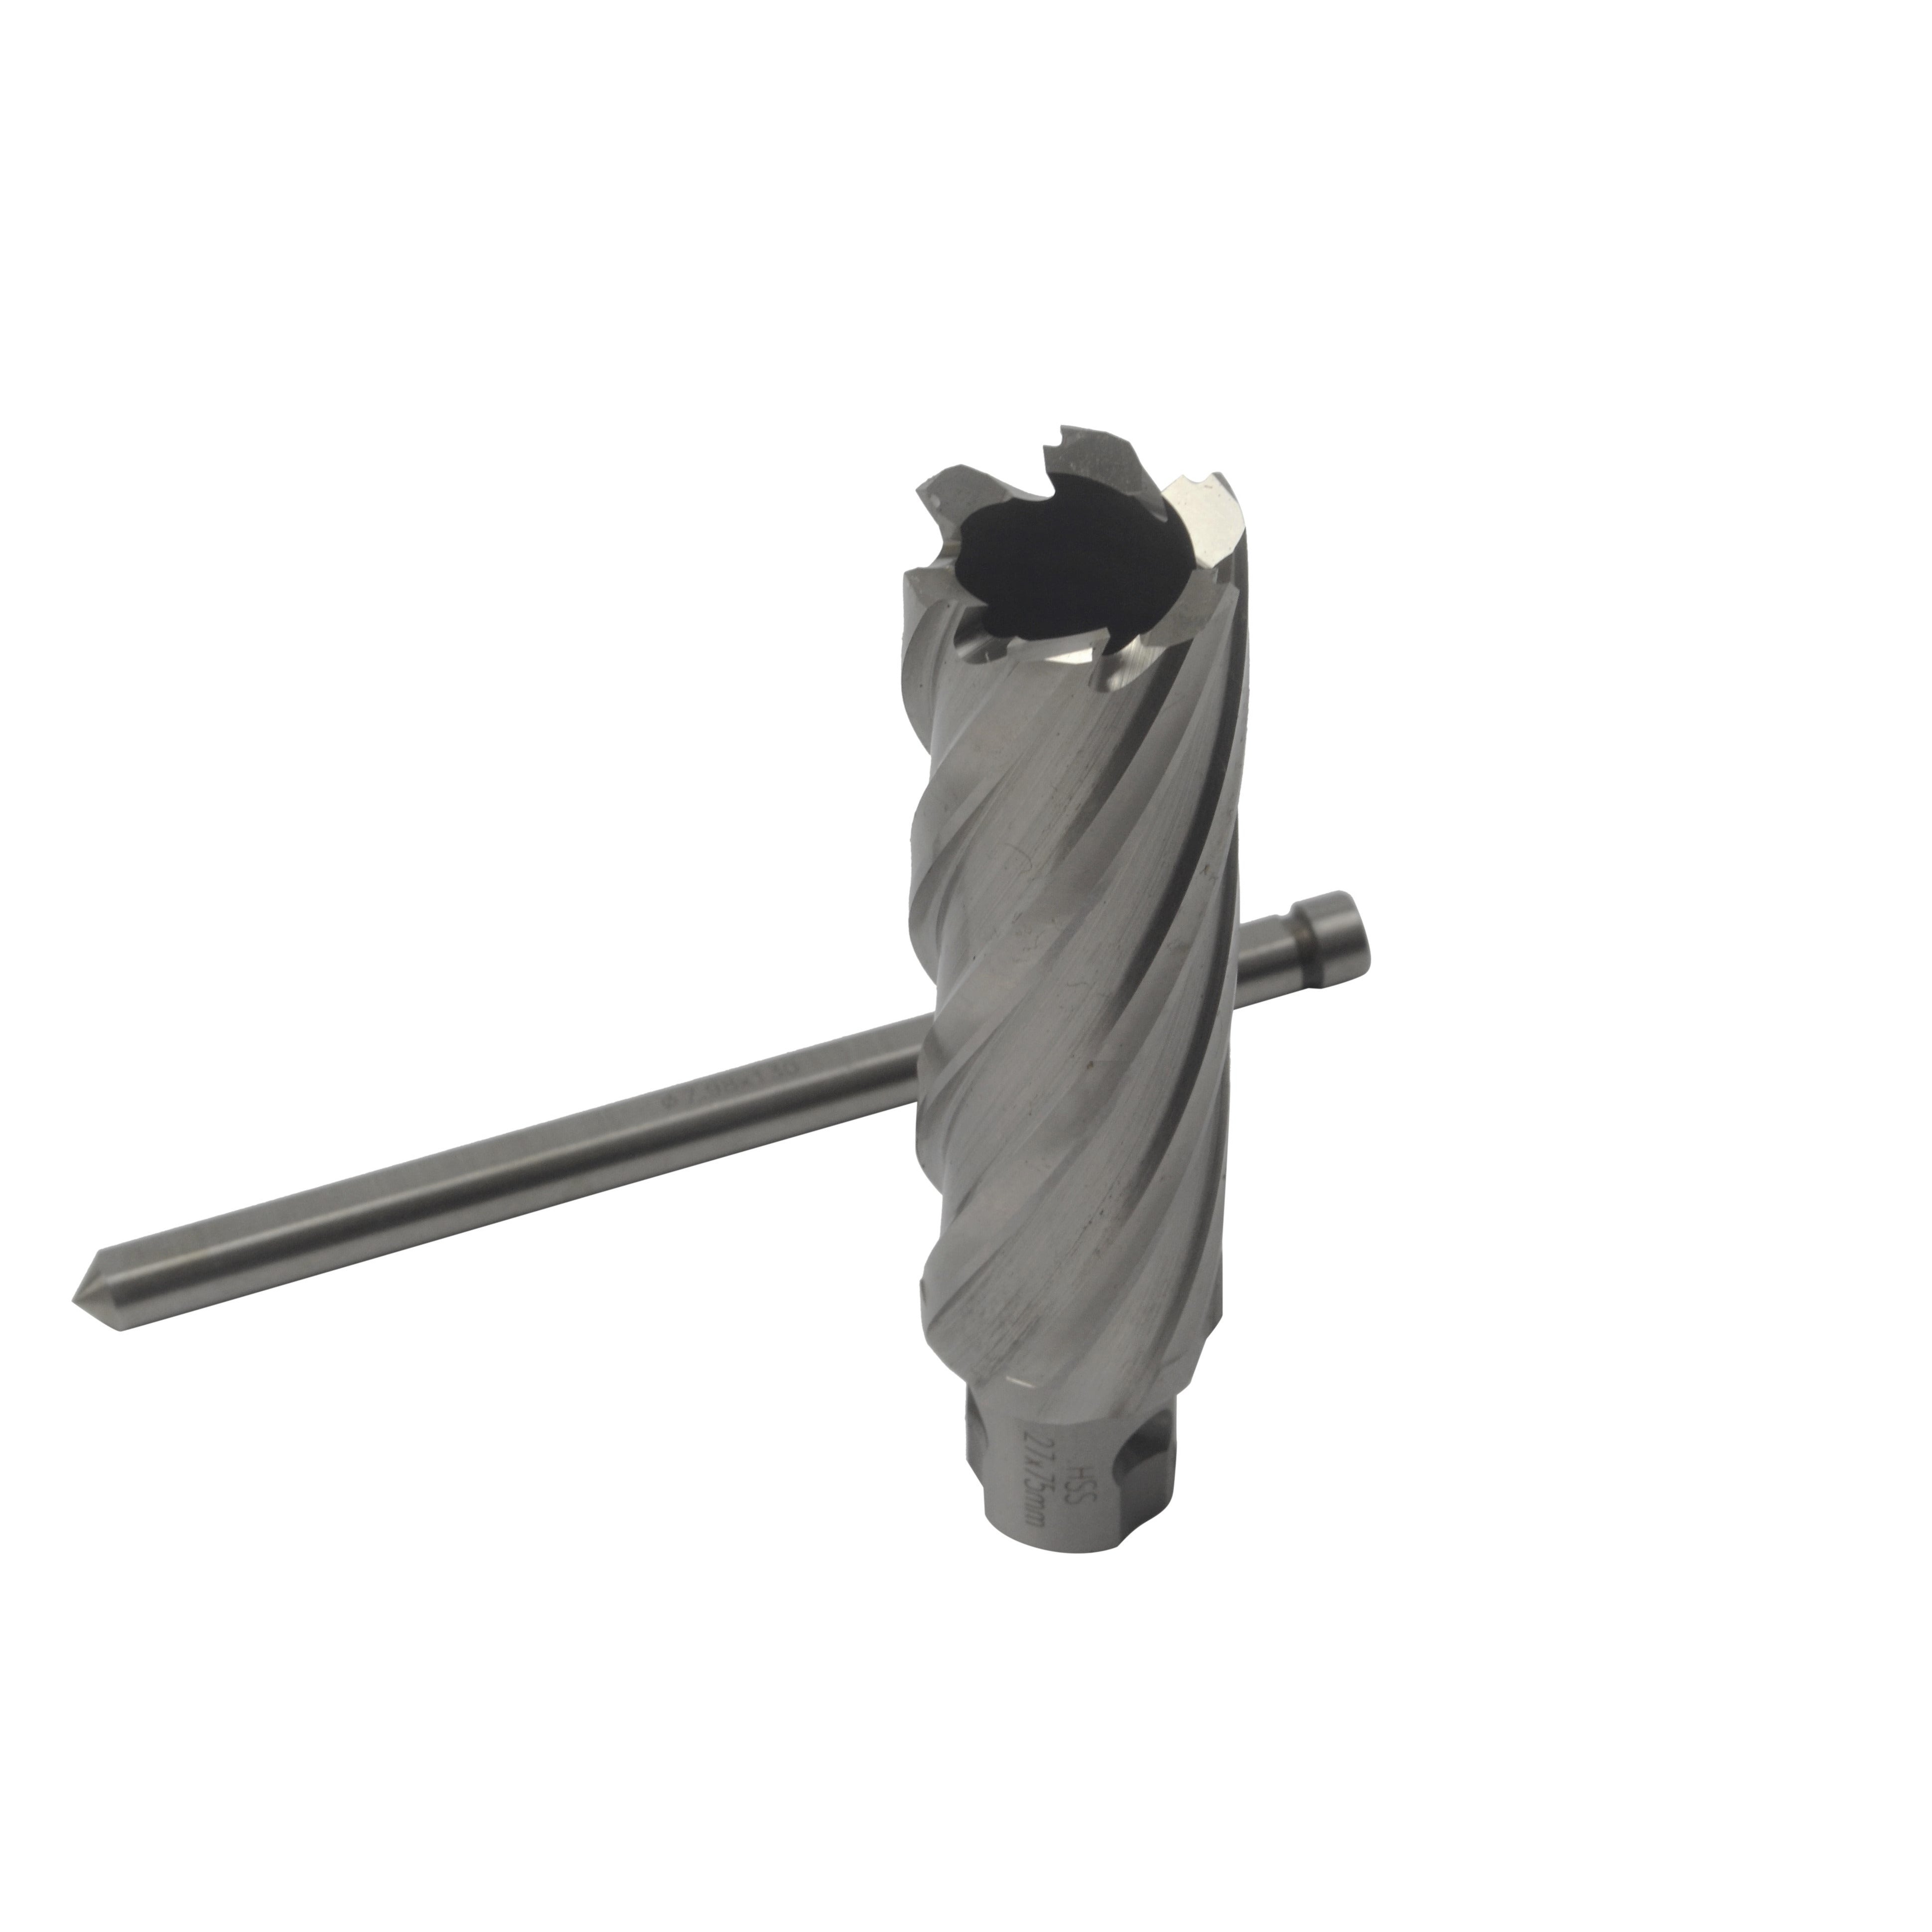 HSS Annular Cutter 75 mm DOC 27 mm  Diameter Universal Weldon Shank